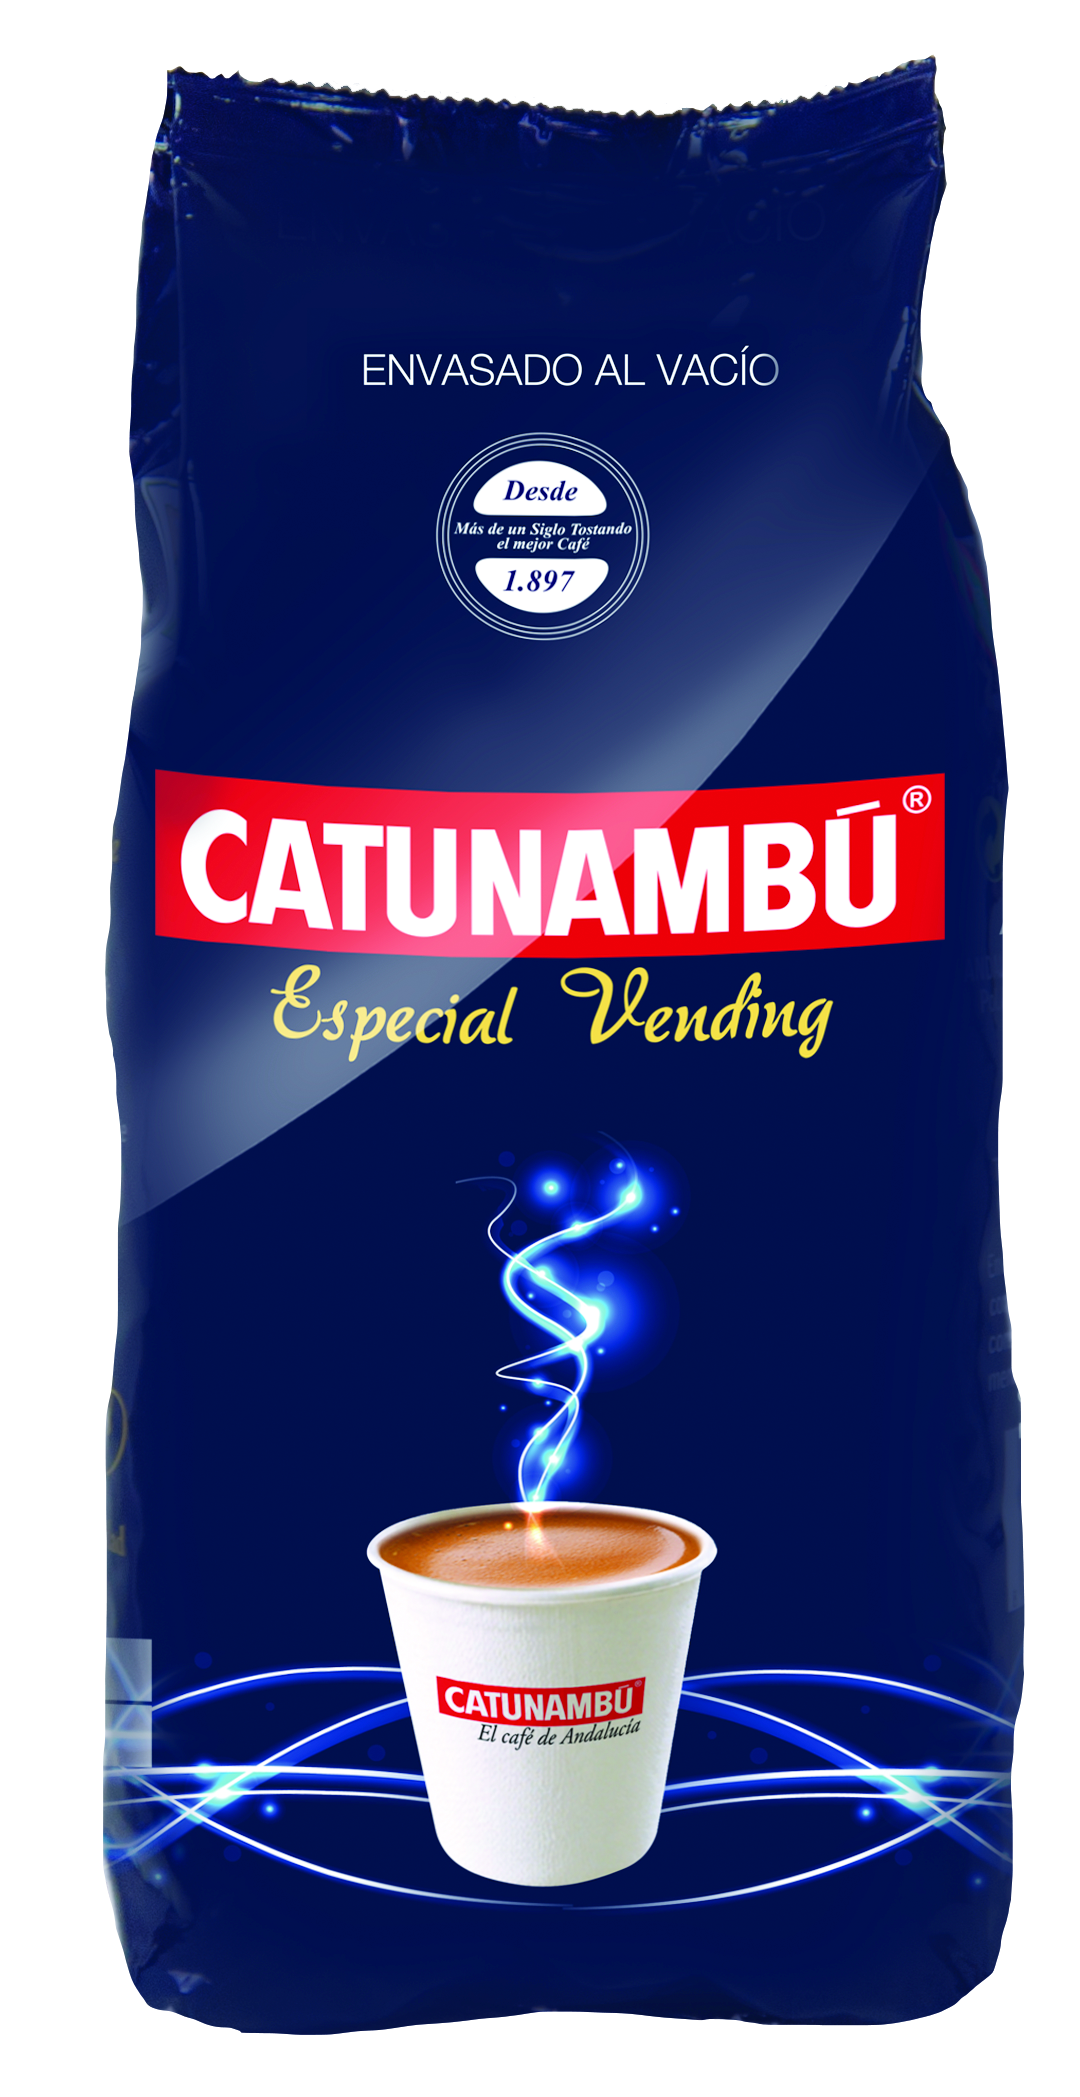 Catunambu vending